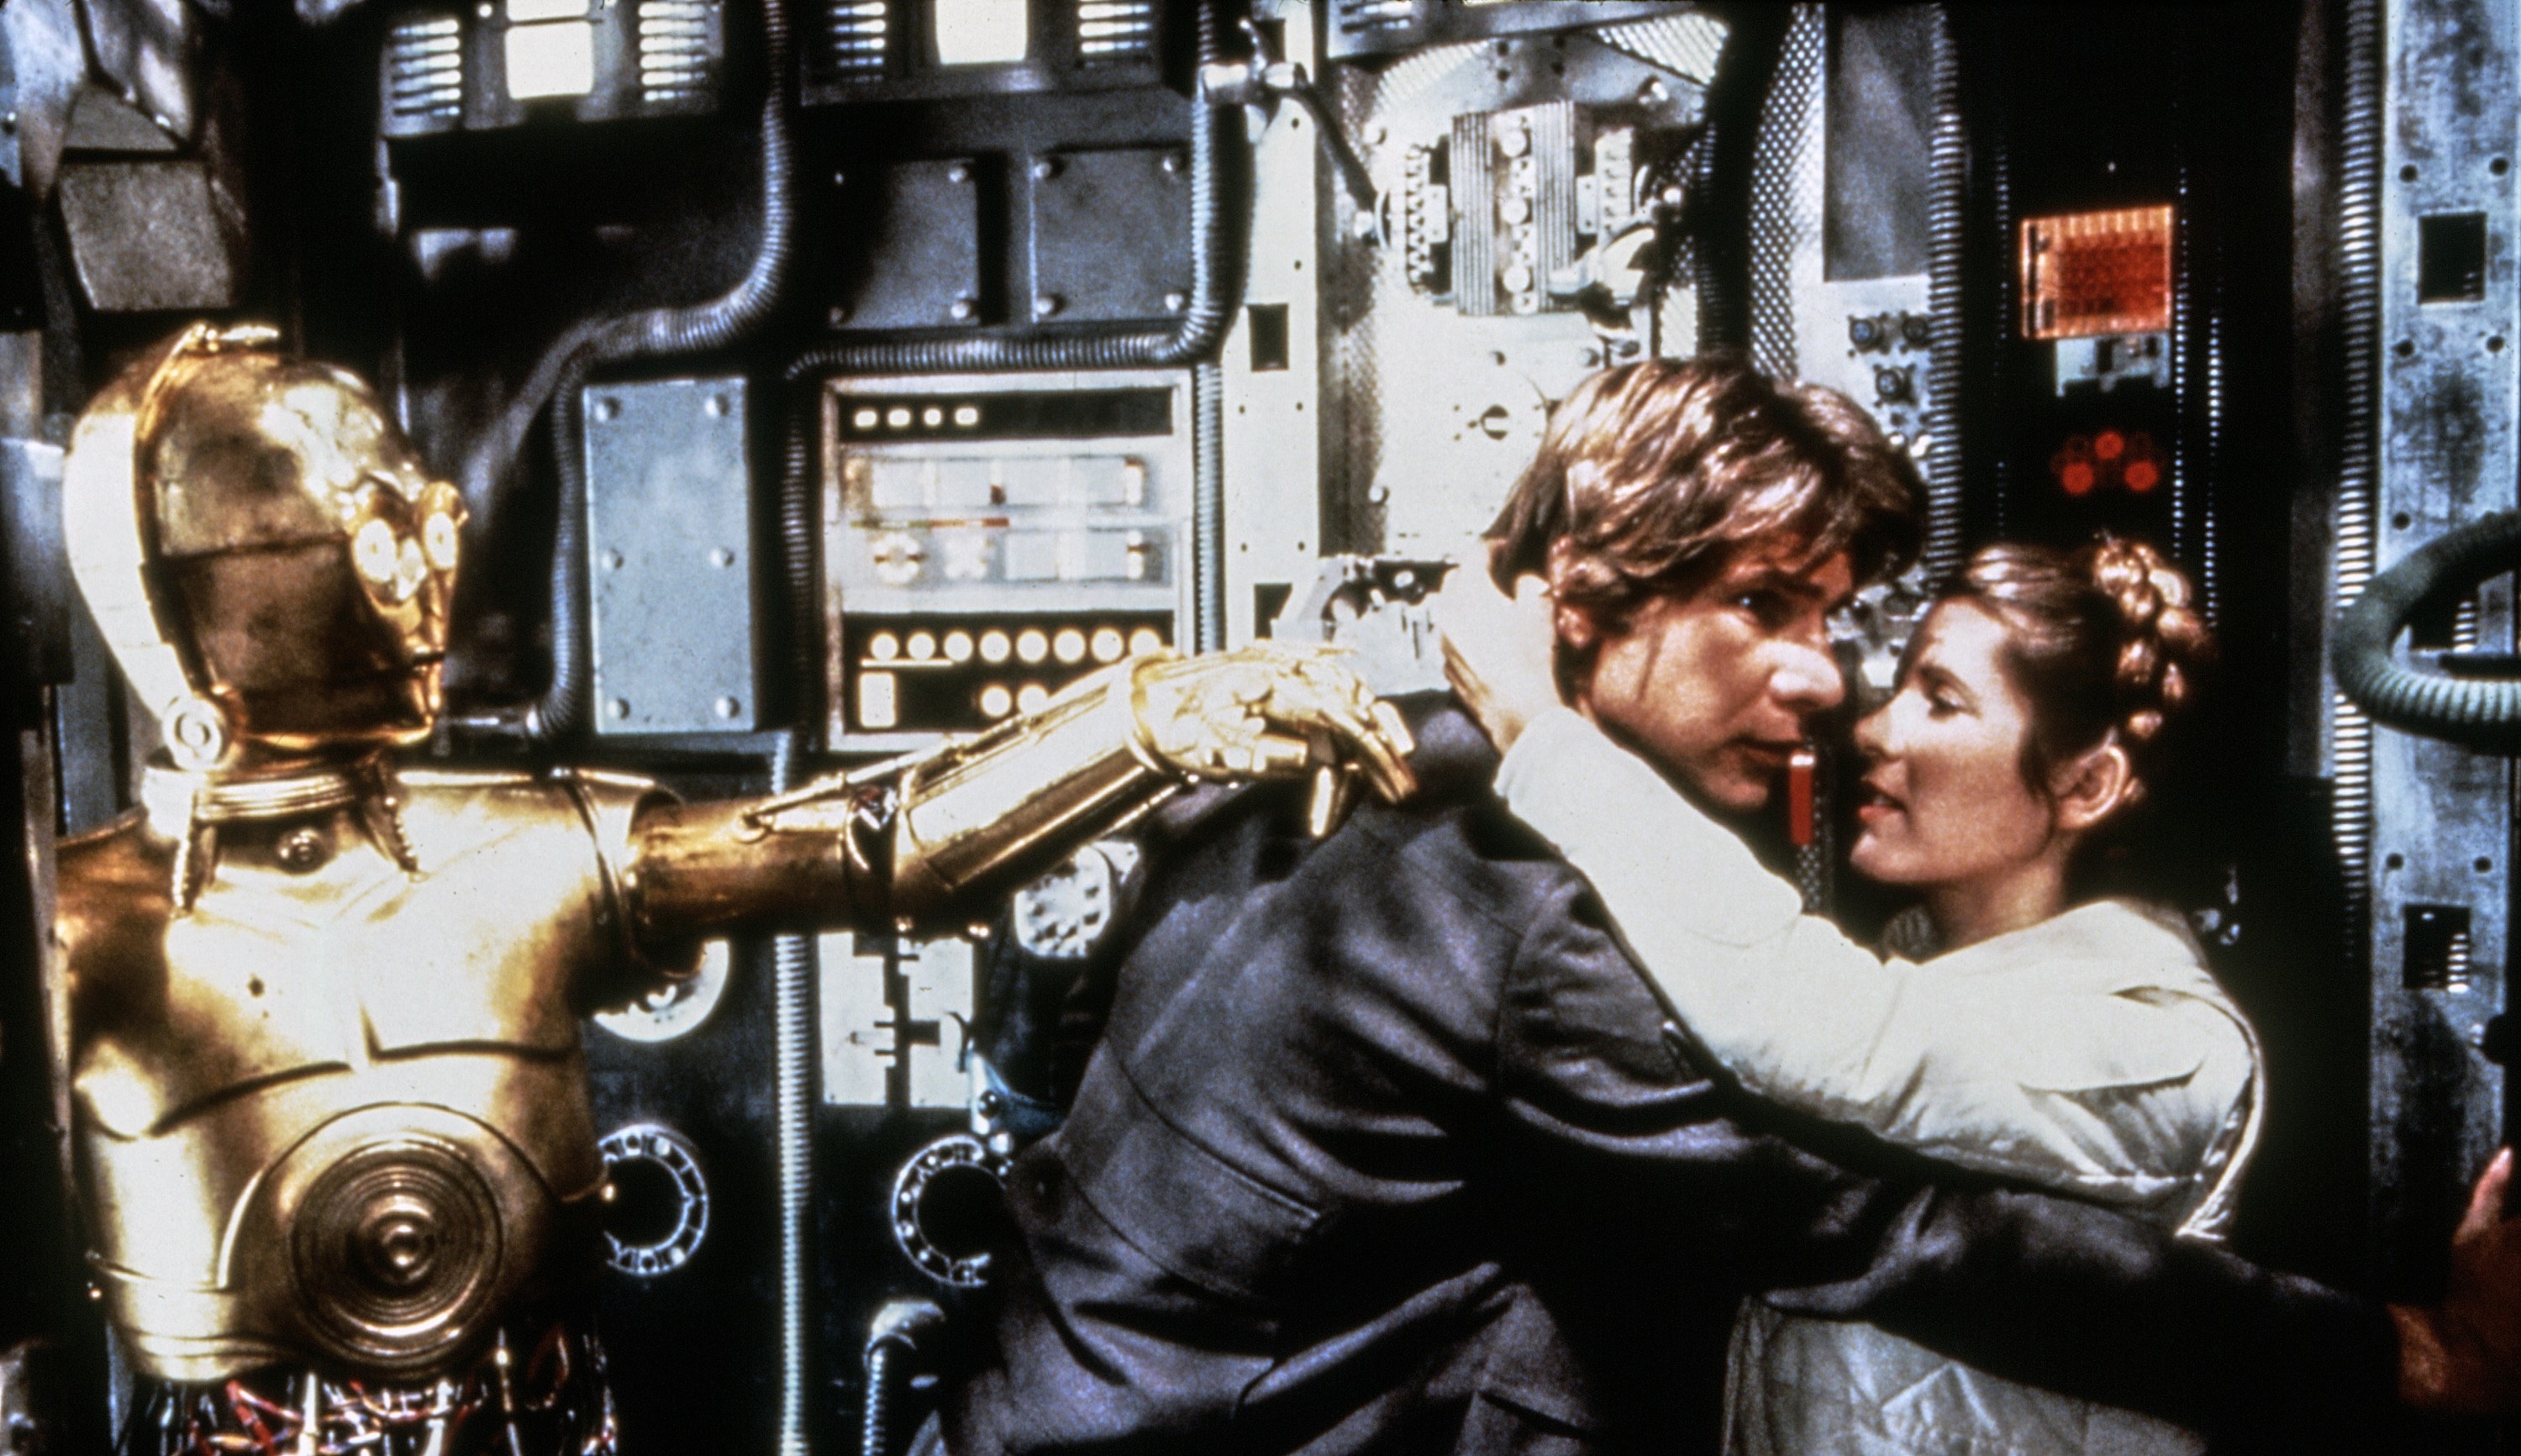 Han Solo, Leia, and C-3PO